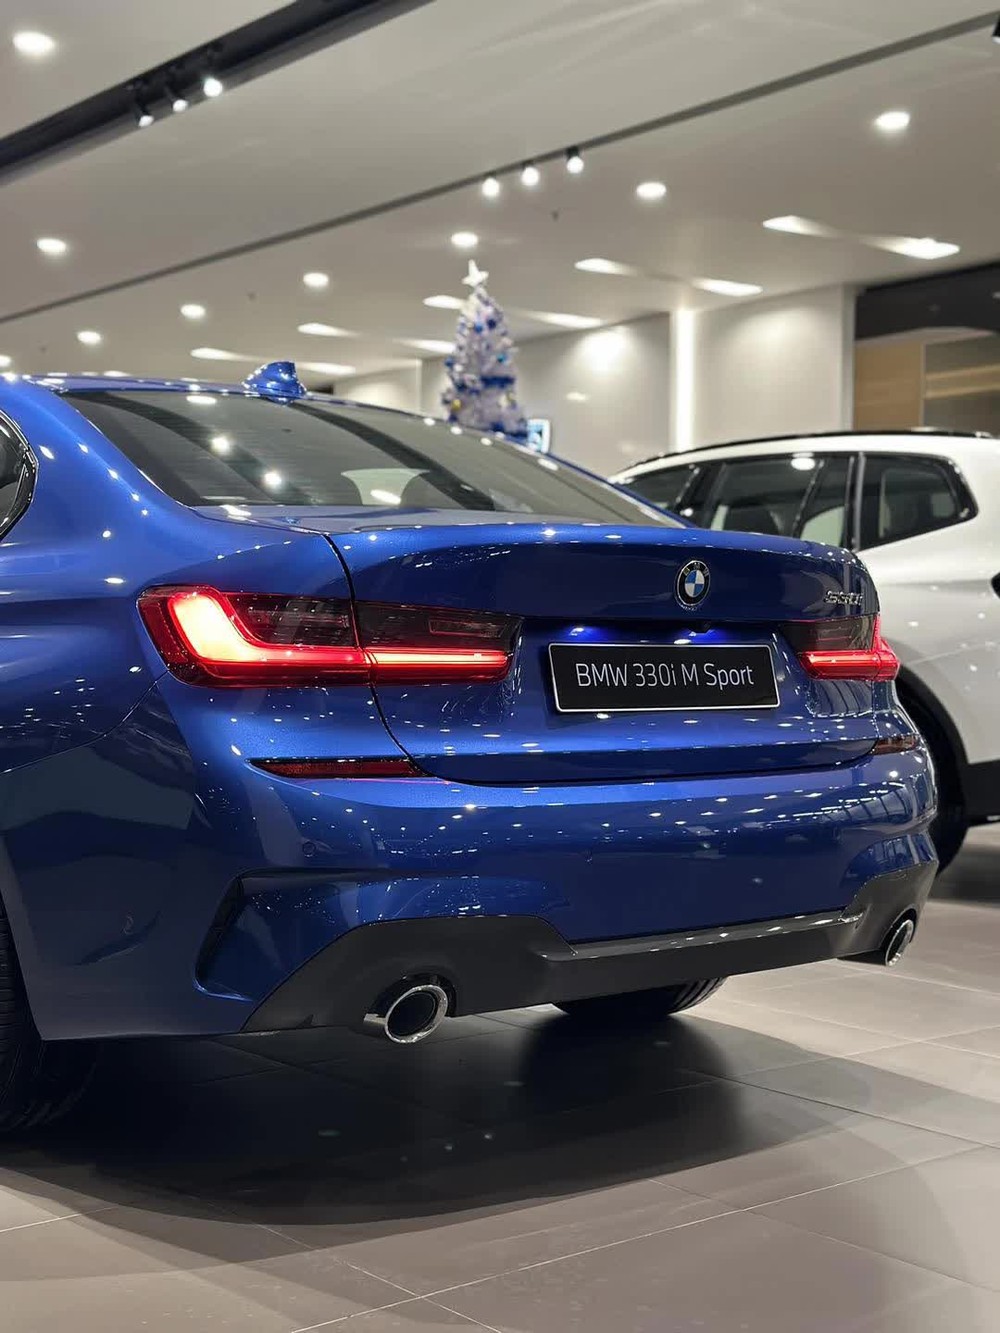 Ảnh chi tiết BMW 3 Series lắp ráp: Nâng cấp nhiều trang bị từ bản tiêu chuẩn, rẻ hơn xe nhập 815 triệu đồng - Ảnh 13.